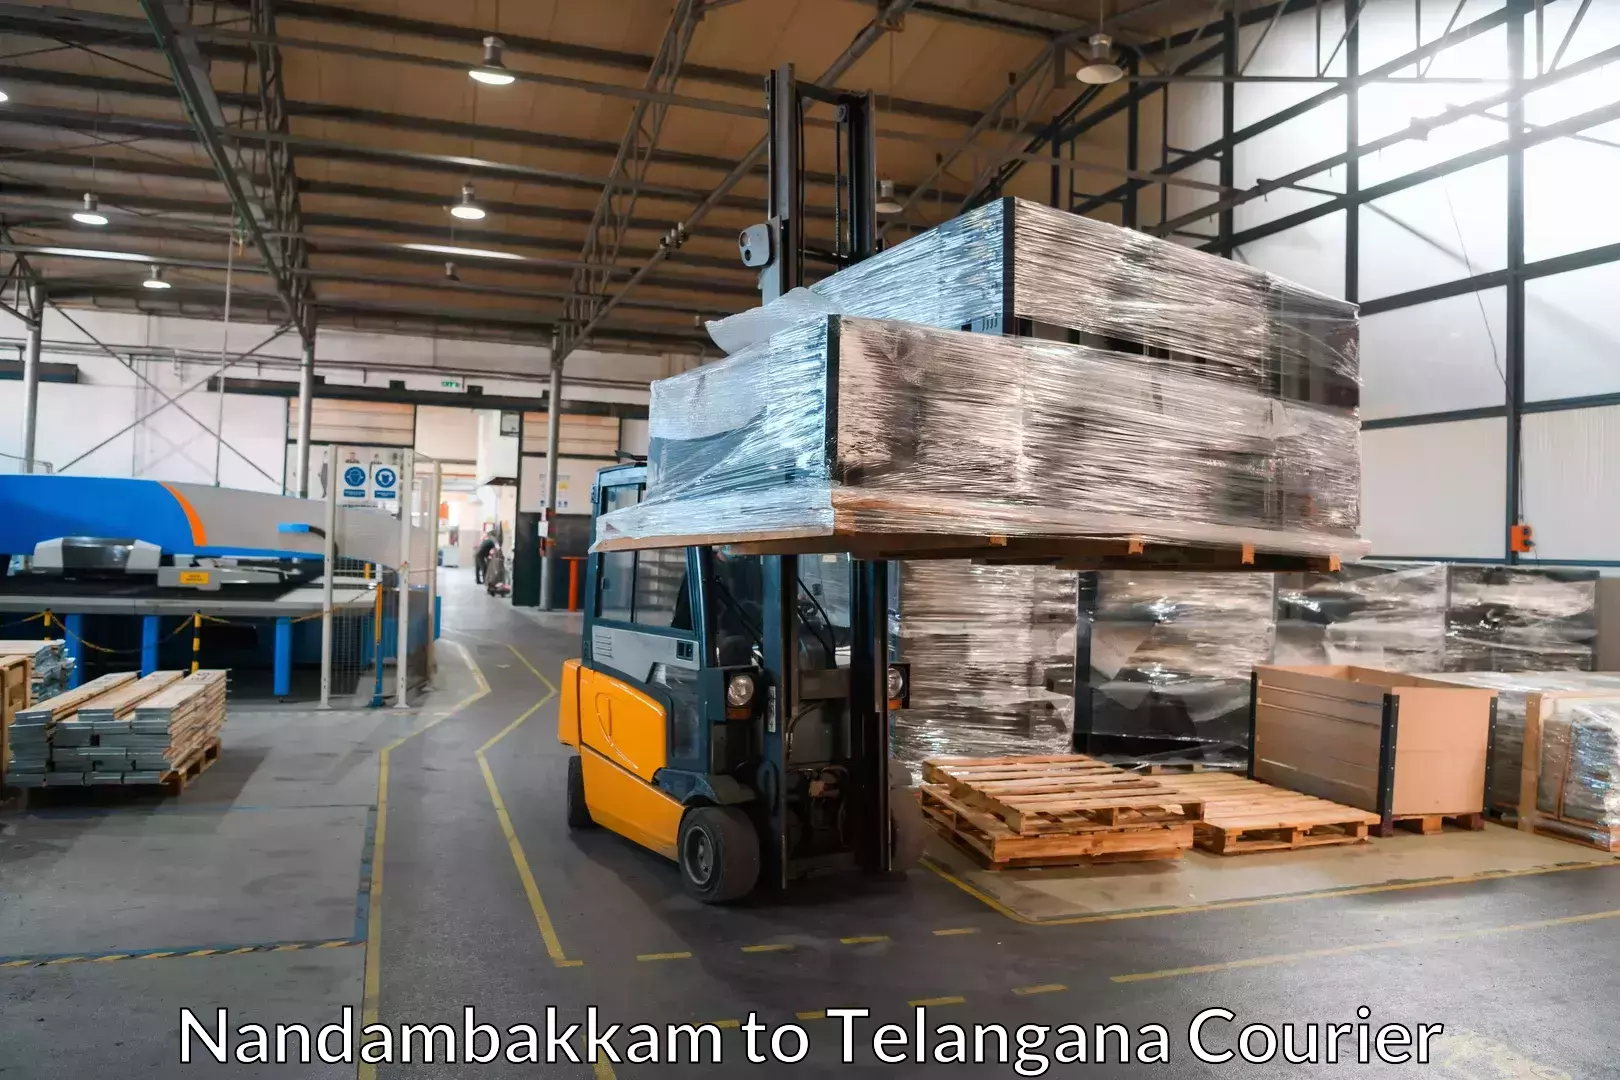 Trusted moving company Nandambakkam to Babasagar